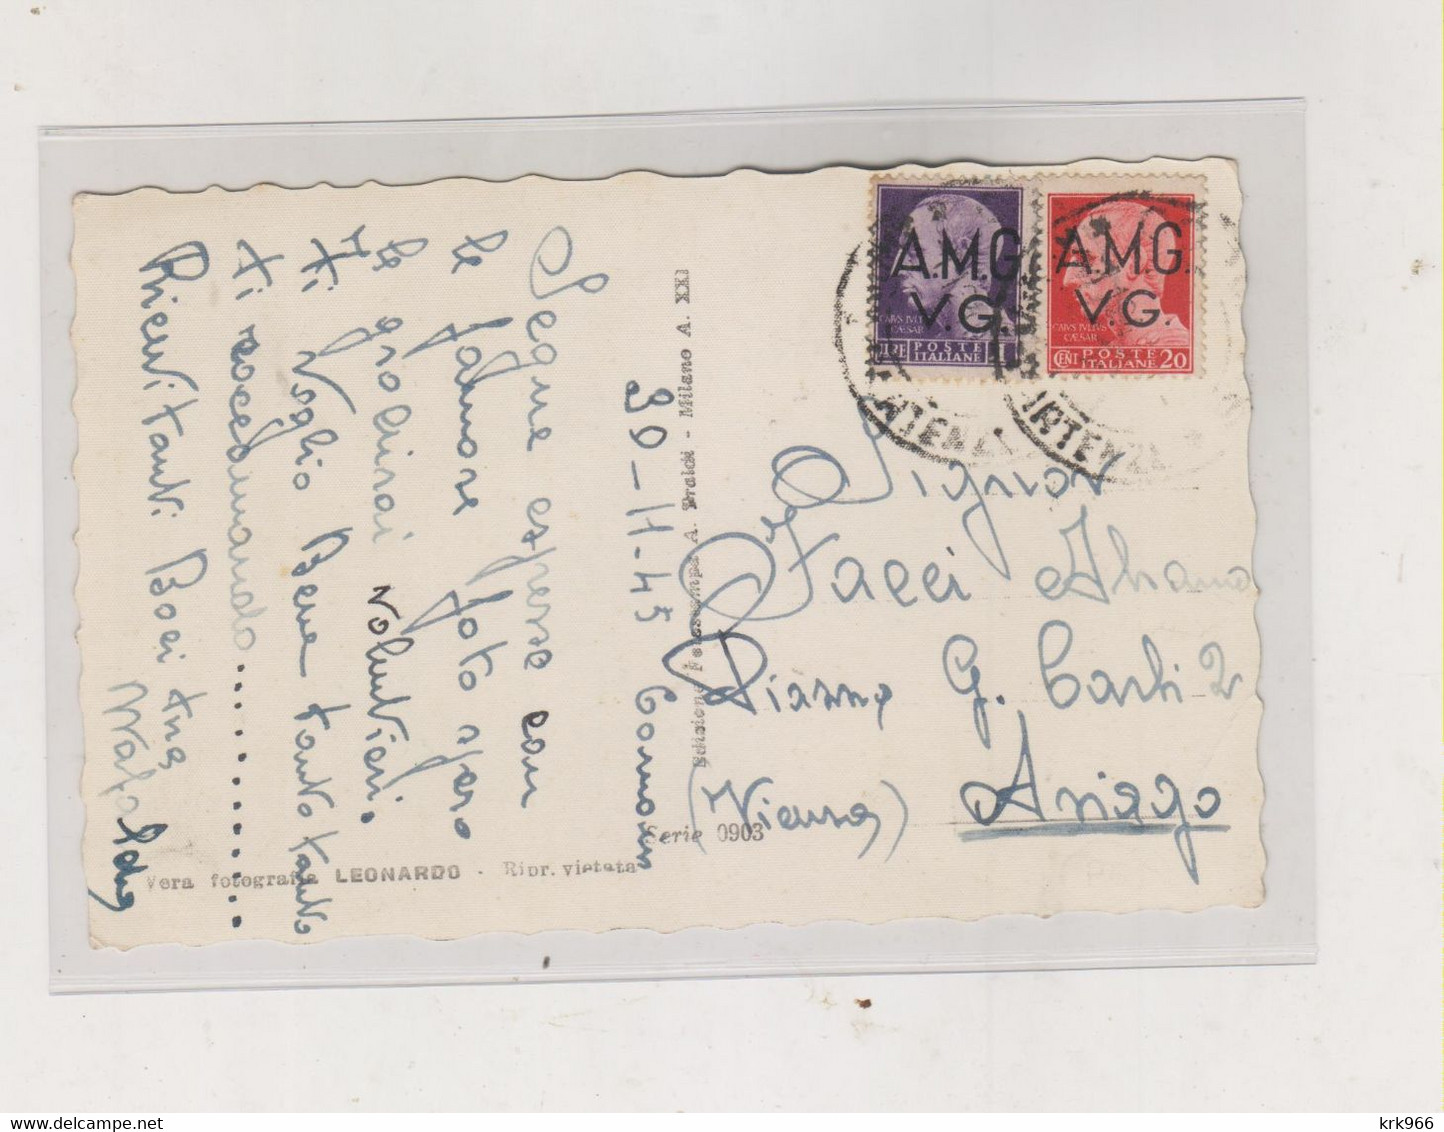 ITALY TRIESTE A 1945  AMG-VG Nice  Postcard - Storia Postale